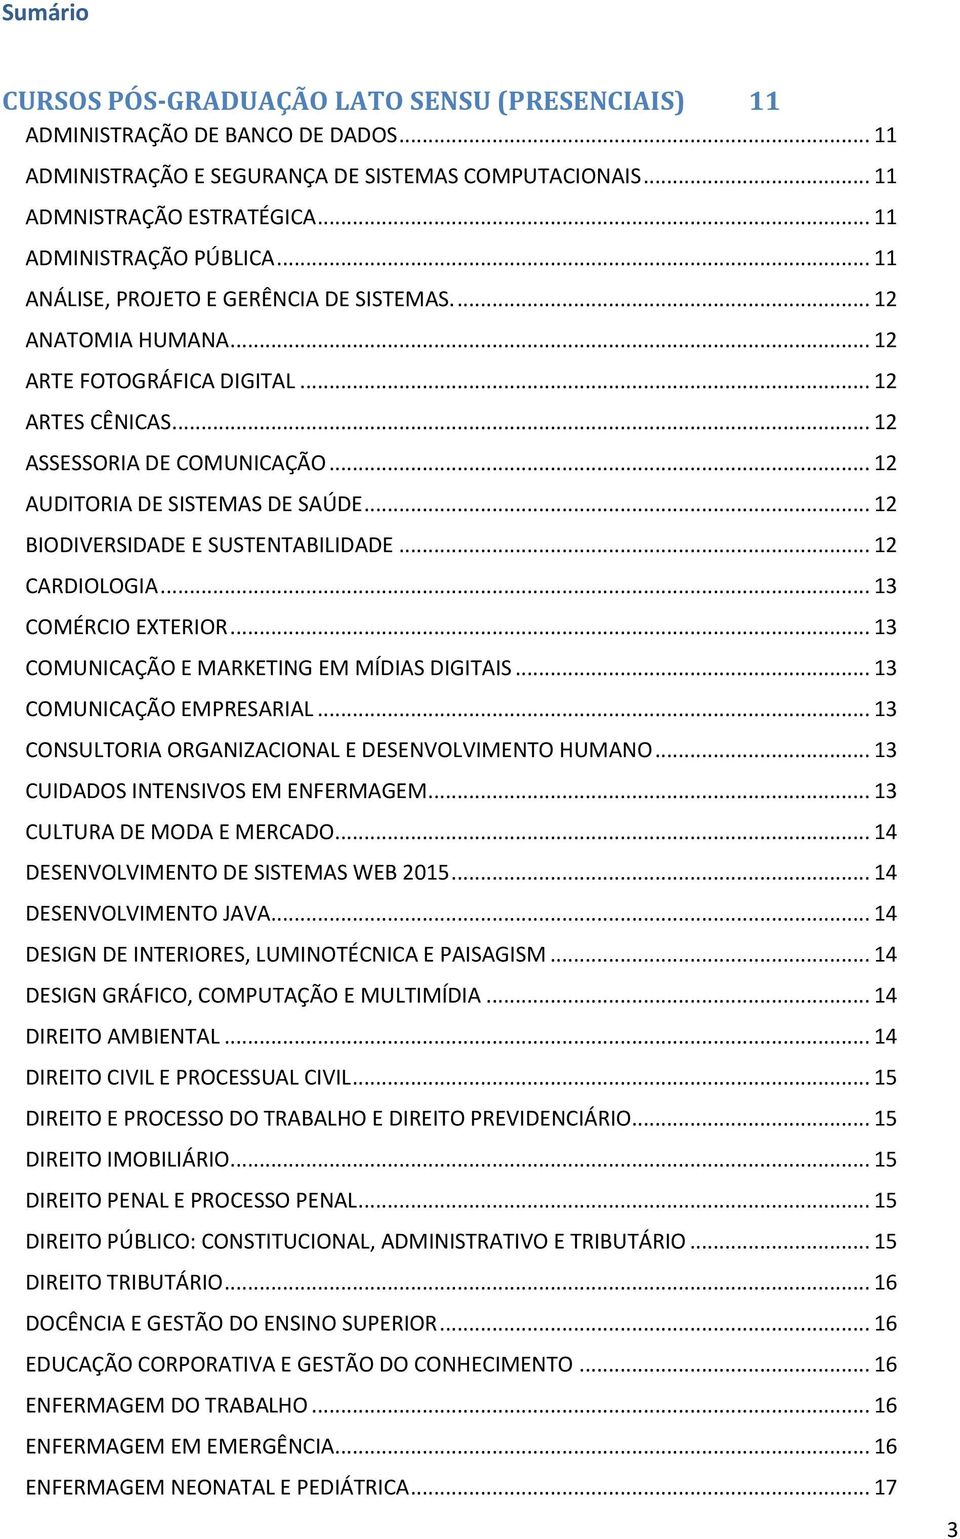 .. 12 AUDITORIA DE SISTEMAS DE SAÚDE... 12 BIODIVERSIDADE E SUSTENTABILIDADE... 12 CARDIOLOGIA... 13 COMÉRCIO EXTERIOR... 13 COMUNICAÇÃO E MARKETING EM MÍDIAS DIGITAIS... 13 COMUNICAÇÃO EMPRESARIAL.